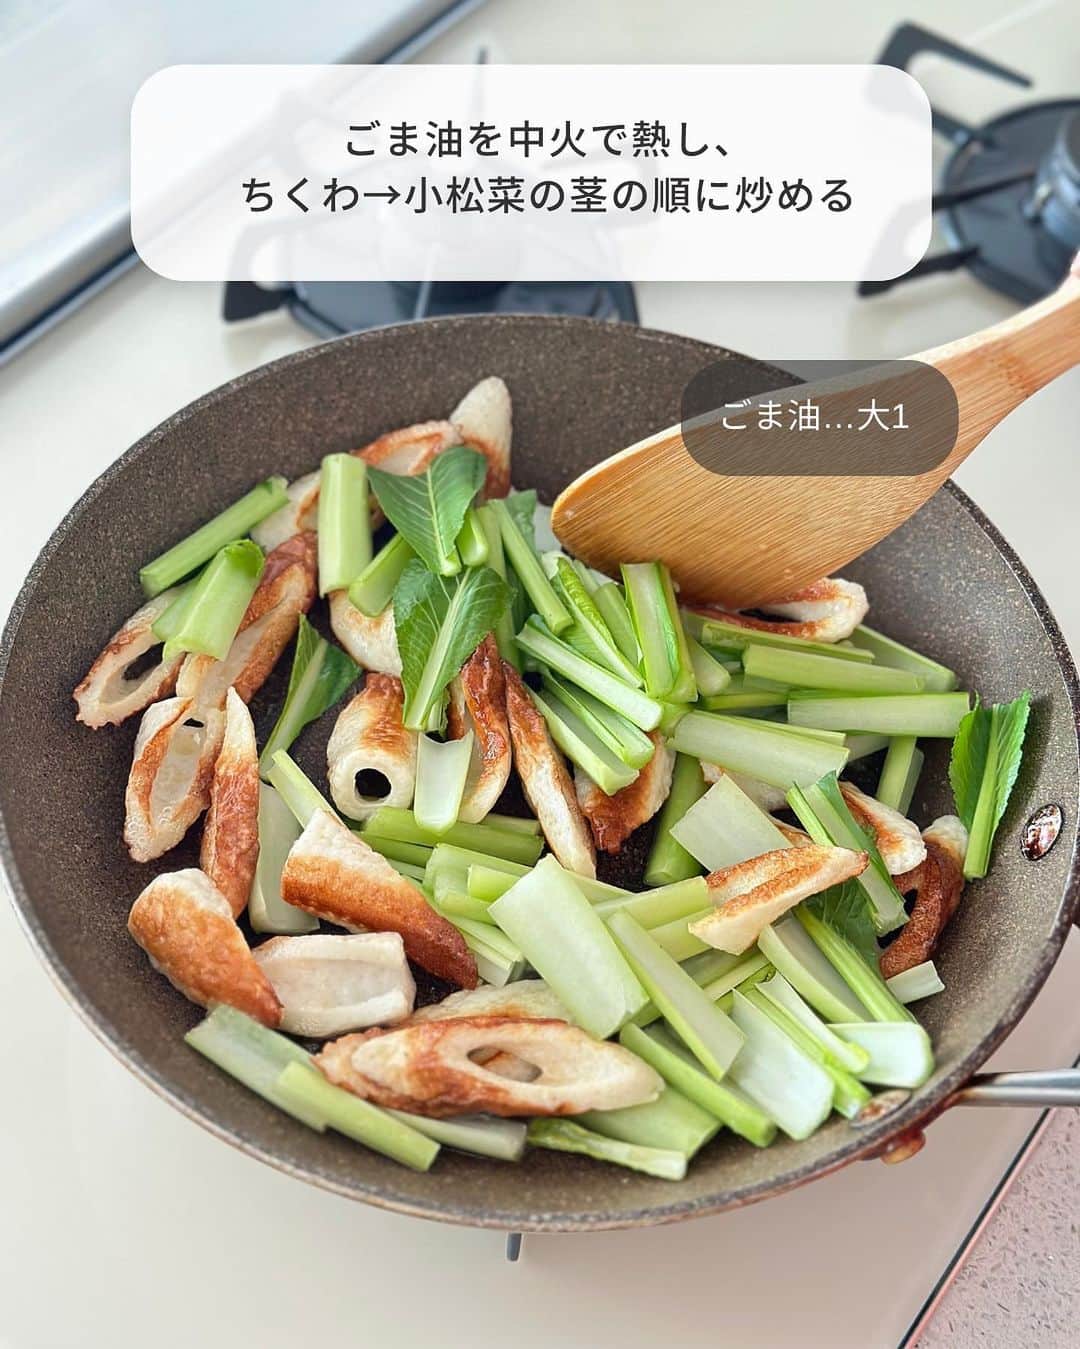 Yuuさんのインスタグラム写真 - (YuuInstagram)「⳹ ごはん泥棒 ⳼ ˗˗˗˗˗˗˗˗˗˗˗˗˗˗˗˗˗˗˗˗˗˗˗˗˗˗˗˗˗˗˗˗˗˗˗˗˗˗˗˗˗˗˗˗˗˗˗ 𓎩  #小松菜ちくわのごま味噌ソテー ˗˗˗˗˗˗˗˗˗˗˗˗˗˗˗˗˗˗˗˗˗˗˗˗˗˗˗˗˗˗˗˗˗˗˗˗˗˗˗˗˗˗˗˗˗˗˗ ⁡ パパッとできて栄養満点💯 あと1品やお弁当にも使える 万能副菜ができました〜👏🏻*´꒳`*)💖 ⁡ 濃厚なごま味噌味で 小松菜嫌いもビックリの美味しさ😳 ⁡ ちくわ入りでボリュームも旨味もマシマシ。 ごはんにもビールにもぴったりです👍🏻 ̖́- ⁡ 今回は、小松菜で作りましたが ほうれん草でもいいし これからの季節は、なすでも絶対美味しい🍆 ⁡ ちくわがベストですが 苦手であれば厚揚げで作っても◎ ⁡ ちょっと地味だけど(笑) 小松菜が驚くほど食べれるので よかったらお試しくださいね(*^^*)👍🏻 ̖́- ⁡ ⁡ ⁡ ‎‎𐒨 小松菜ちくわのごま味噌ソテー 𐒧 𐩢𐩺꙳⋆ᐝ ￣￣￣￣￣￣￣￣￣￣￣￣￣￣￣￣￣￣￣￣￣￣ ⏰調理時間：10min 🐧冷蔵保存：2〜3日 ⁡ ❲材料：2〜3人分❳ ⁡ ちくわ(※)…1袋(4本) 小松菜…1束(200g) ごま油,白いりごま…各大1 ⚪︎ みりん…大2 ⚪︎ 白すりごま,酒…各大1 ⚪︎ 味噌…小2 ⚪︎ しょうゆ,砂糖…各小1 ⁡ ⁡ ➊ ちくわは斜め薄切りにする。小松菜は葉と茎に分け、それぞれ3〜4cm長さに切る。 ➋ フライパンにごま油を中火で熱し、ちくわ→小松菜の茎の順に炒める。火が通ったら小松菜の葉を加え、さらに炒める。 ➌ 小松菜の葉がしんなりしたら弱火にし、合わせた〔⚪︎〕を回し入れて絡める。火を止め、白いりごまをふる。（小松菜の苦味が苦手な方は、仕上げに白すりごまを大1追加すると◎）  ⁡ ￣￣￣￣￣￣￣￣￣￣￣￣￣￣￣￣￣￣￣ (※)一正蒲鉾さまの( @ichimasa_official ) 𐒨 笹竹 ちくわ 4本 𐒧 を使用✨ ⁡ ⁡ ⁡ 𐒨 代用 𐒧ˎˊ˗  ⁡ ❏ ❮ ちくわ ❯ ➭ ちくわがベストですが、苦手な方は厚揚げでも♩ ❏ ❮ 小松菜 ❯ ➭ ほうれん草・なすでも可 ⁡ ⁡ 𐒨 冷凍保存 𐒧ˎˊ˗  ⁡ ❏ 水分が出やすいので、すりごまをたっぷり入れるか、小松菜を事前に加熱してから炒めると◎ ⁡ ⁡ 𐒨 その他 𐒧ˎˊ˗  ⁡ ❏ 甘めの味つけです。お好みで砂糖を小1/2に減らしても♩(その場合、小松菜の苦味がより強く感じられます) ❏ 小松菜の苦味が苦手な方は、仕上げに白すりごま大1を追いごましても！ ❏ 〔⚪︎〕は煮詰まりやすいので、弱火にするか火を止めてから加えてください ❏ 味噌は[合わせ味噌]を使用 ⁡ ⁡ ⁡ ⁡ ⁡ 🧸𓈒𓏸◌〔 愛用のキッチングッズ 〕𓂅𓎩‎ ┄┈┈┈┄┈┈┈┄┈┈┈┄┈┈┈┈┈┈┈ 　 　　#楽天ルーム に載せています🐼♥ˎˊ˗  ⁡ ┄┈┈┈┄┈┈┈┄┈┈┈┄┈┈┈┈┈┈┈ @yuuyuu514 のハイライトから飛べます𖤐˒˒ ⁡ ⁡ ⁡ ⁡ ⁡ ⁡ 🧸𓈒𓏸◌〔 お 願 い 〕𖤐˒˒ ┄┈┈┈┄┈┈┈┄┈┈┈┄┈┈┈┈┈┈┈ ⁡ 〜 次に作る誰かのために 〜 コメントお待ちしております💭 ⁡ ☑︎レシピへの質問・感想 ☑︎アレンジしたこと ☑︎失敗したこと erc… ⁡ よくある質問やアレンジ・失敗談は コメントでトップ固定しております📍ˎˊ˗  ⁡ ぜひ、参考にして作ってみてくださいね👩🏻‍🍳 ⁡ ┄┈┈┈┄┈┈┈┄┈┈┈┄┈┈┈┈┈┈┈ フォロワーさん同士でも 気軽にお話ししてくださいね🤝💞 ⁡ 1人では試作が追いつかない部分もあるので 私の代わりに質問に答えてくださるのも 大大大歓迎です⋆⸜(* ॑꒳ ॑* )⸝♡ ⁡ ⁡ ⁡   ⁡  ⠀ ⠀ ⠀ ＼ 新 刊 発 売 中 ／ ■□■□■□■□■□■□■□■□■□ 「今日なに作ろう？」をおいしく解決！  ⠀ #Yuuのラクうまよくばりキッチン ■□■□■□■□■□■□■□■□■□  ⠀ ⠀ ⠀ ⠀  𝙰𝚖𝚊𝚣𝚘𝚗、楽天、全国の書店にて お買い求め頂けます( ⸝⸝•ᴗ•⸝⸝ )੭⁾⁾𓈒⋆꙳ ⁡ ▶︎詳しくは @yuuyuu514 のハイライト 　またはプロフィールのリンクから🔗 ⁡ 📖⸝꙳『Yuuのラクうま♡ベストレシピ』  𝟸𝟶万部突破のロングセラー👏 ⁡ 📖⸝꙳『𝚈ｕｕのラクうま♡晩ごはん』 　　𝟹𝟶分で晩ごはん😋🍽 ⁡ 📖⸝꙳『𝚈ｕｕのラクうま♡野菜まるごとレシピ』 　　 野菜レシピ＆保存法ならおまかせ🍅🥦 ⁡ - - - - - - - - - - - - - - - - - - - - - - - - - - - - ⁡ ⁡ ⁡ ⁡ ⁡ 🏷 #小松菜レシピ #小松菜 #ちくわレシピ #ちくわ #ちくわ料理 #作り置きレシピ #つくりおきレシピ #お弁当レシピ #お弁当おかず #冷凍 #冷凍保存 #冷凍作り置き  #簡単レシピ #時短レシピ #節約レシピ #一正蒲鉾 #笹竹 #PR」4月23日 8時15分 - yuuyuu514